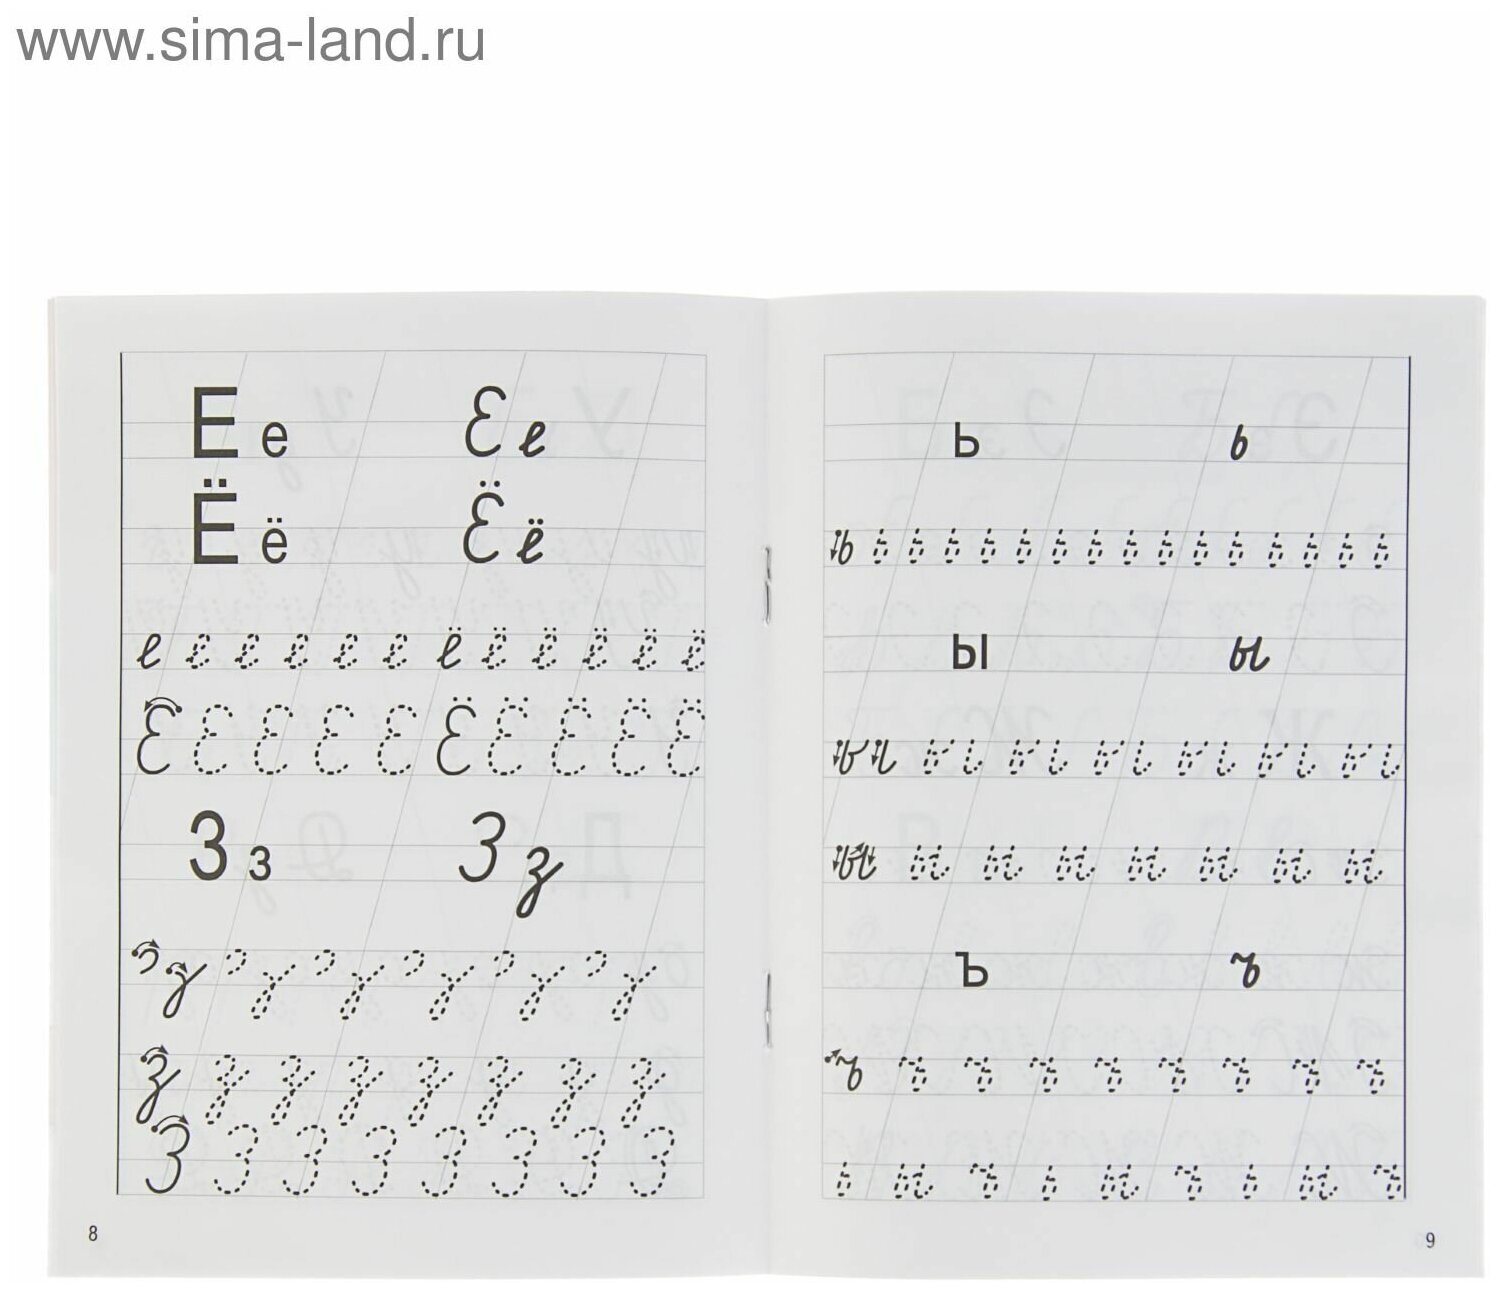 Прописи «Учимся писать письменные буквы»: для детей 6-7 лет. Бортникова Е.